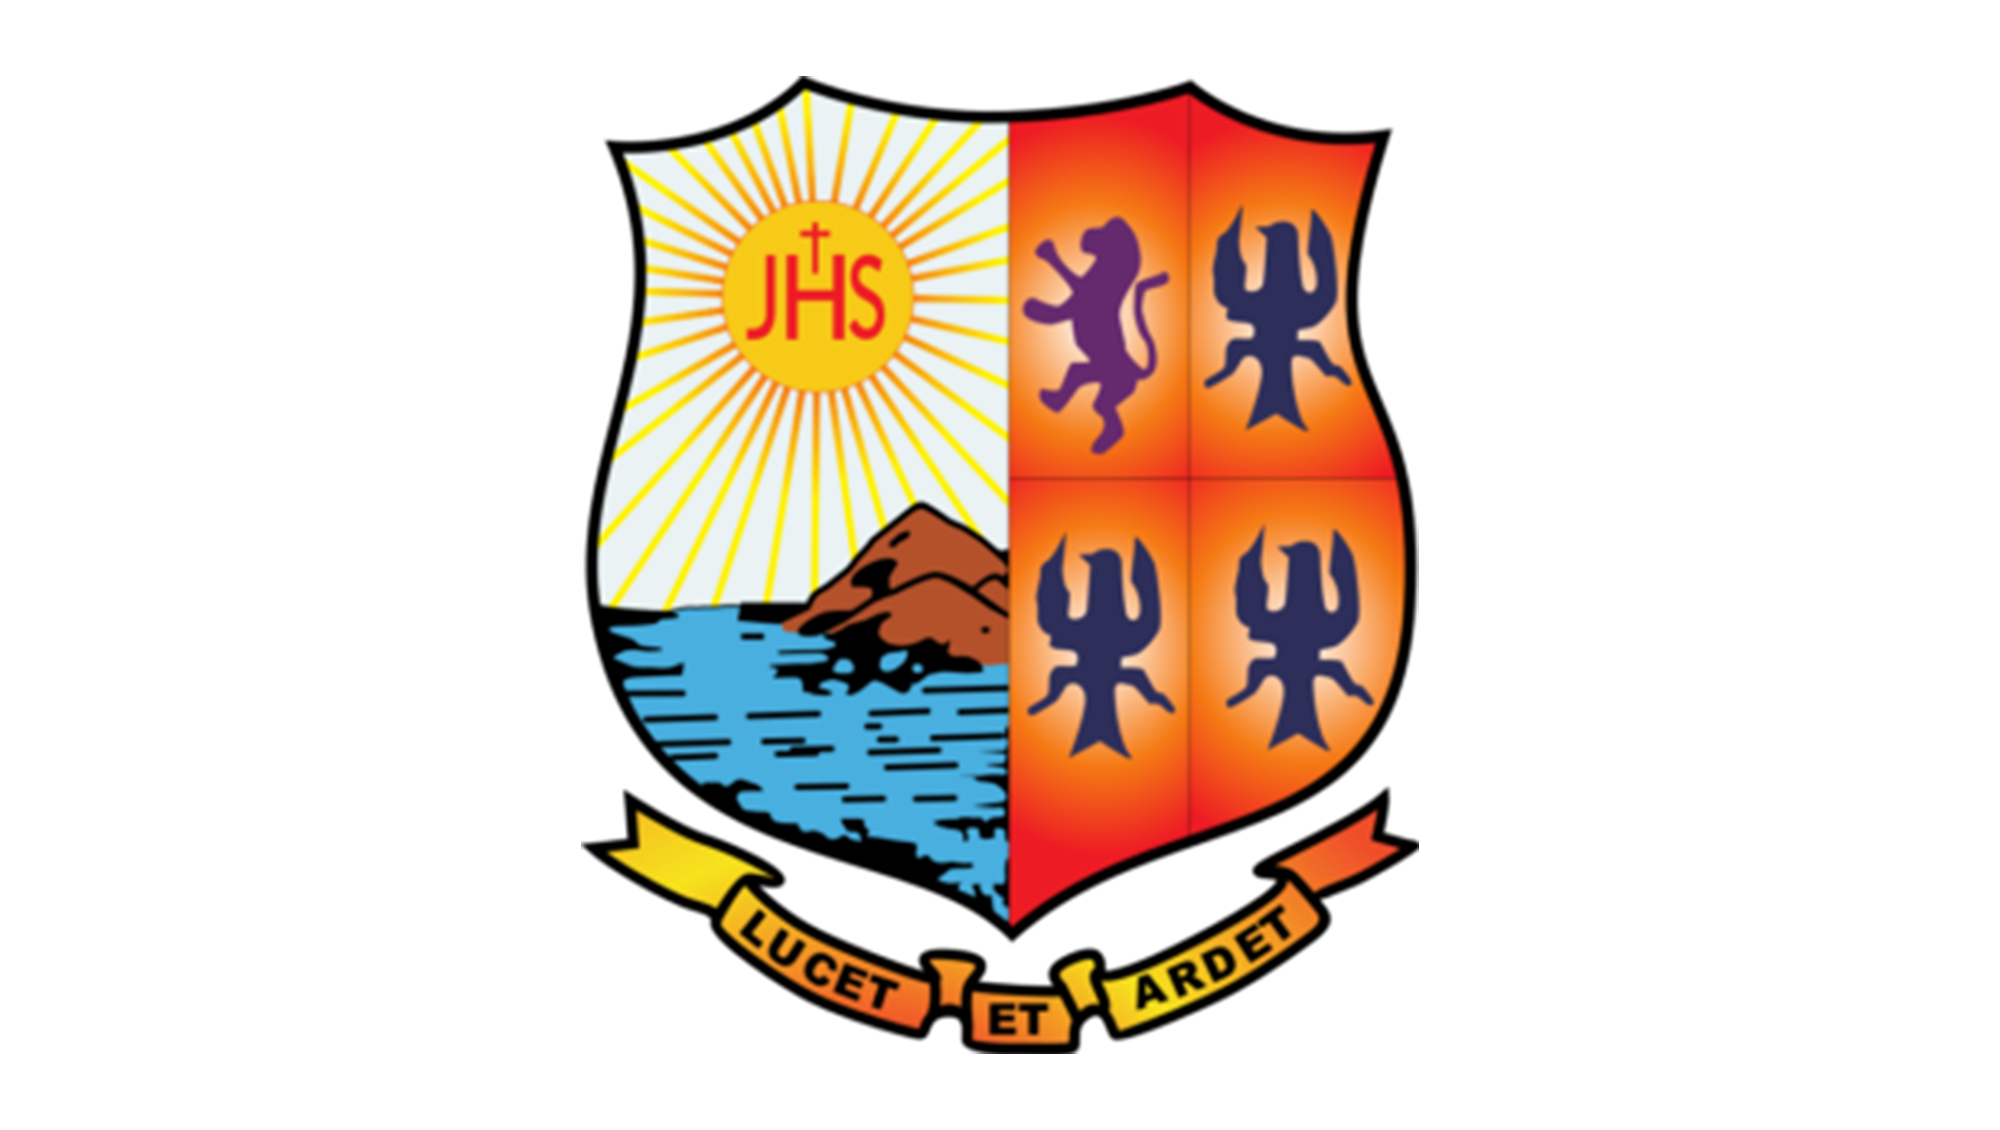 St. Aloysius College (Autonomous), Mangaluru